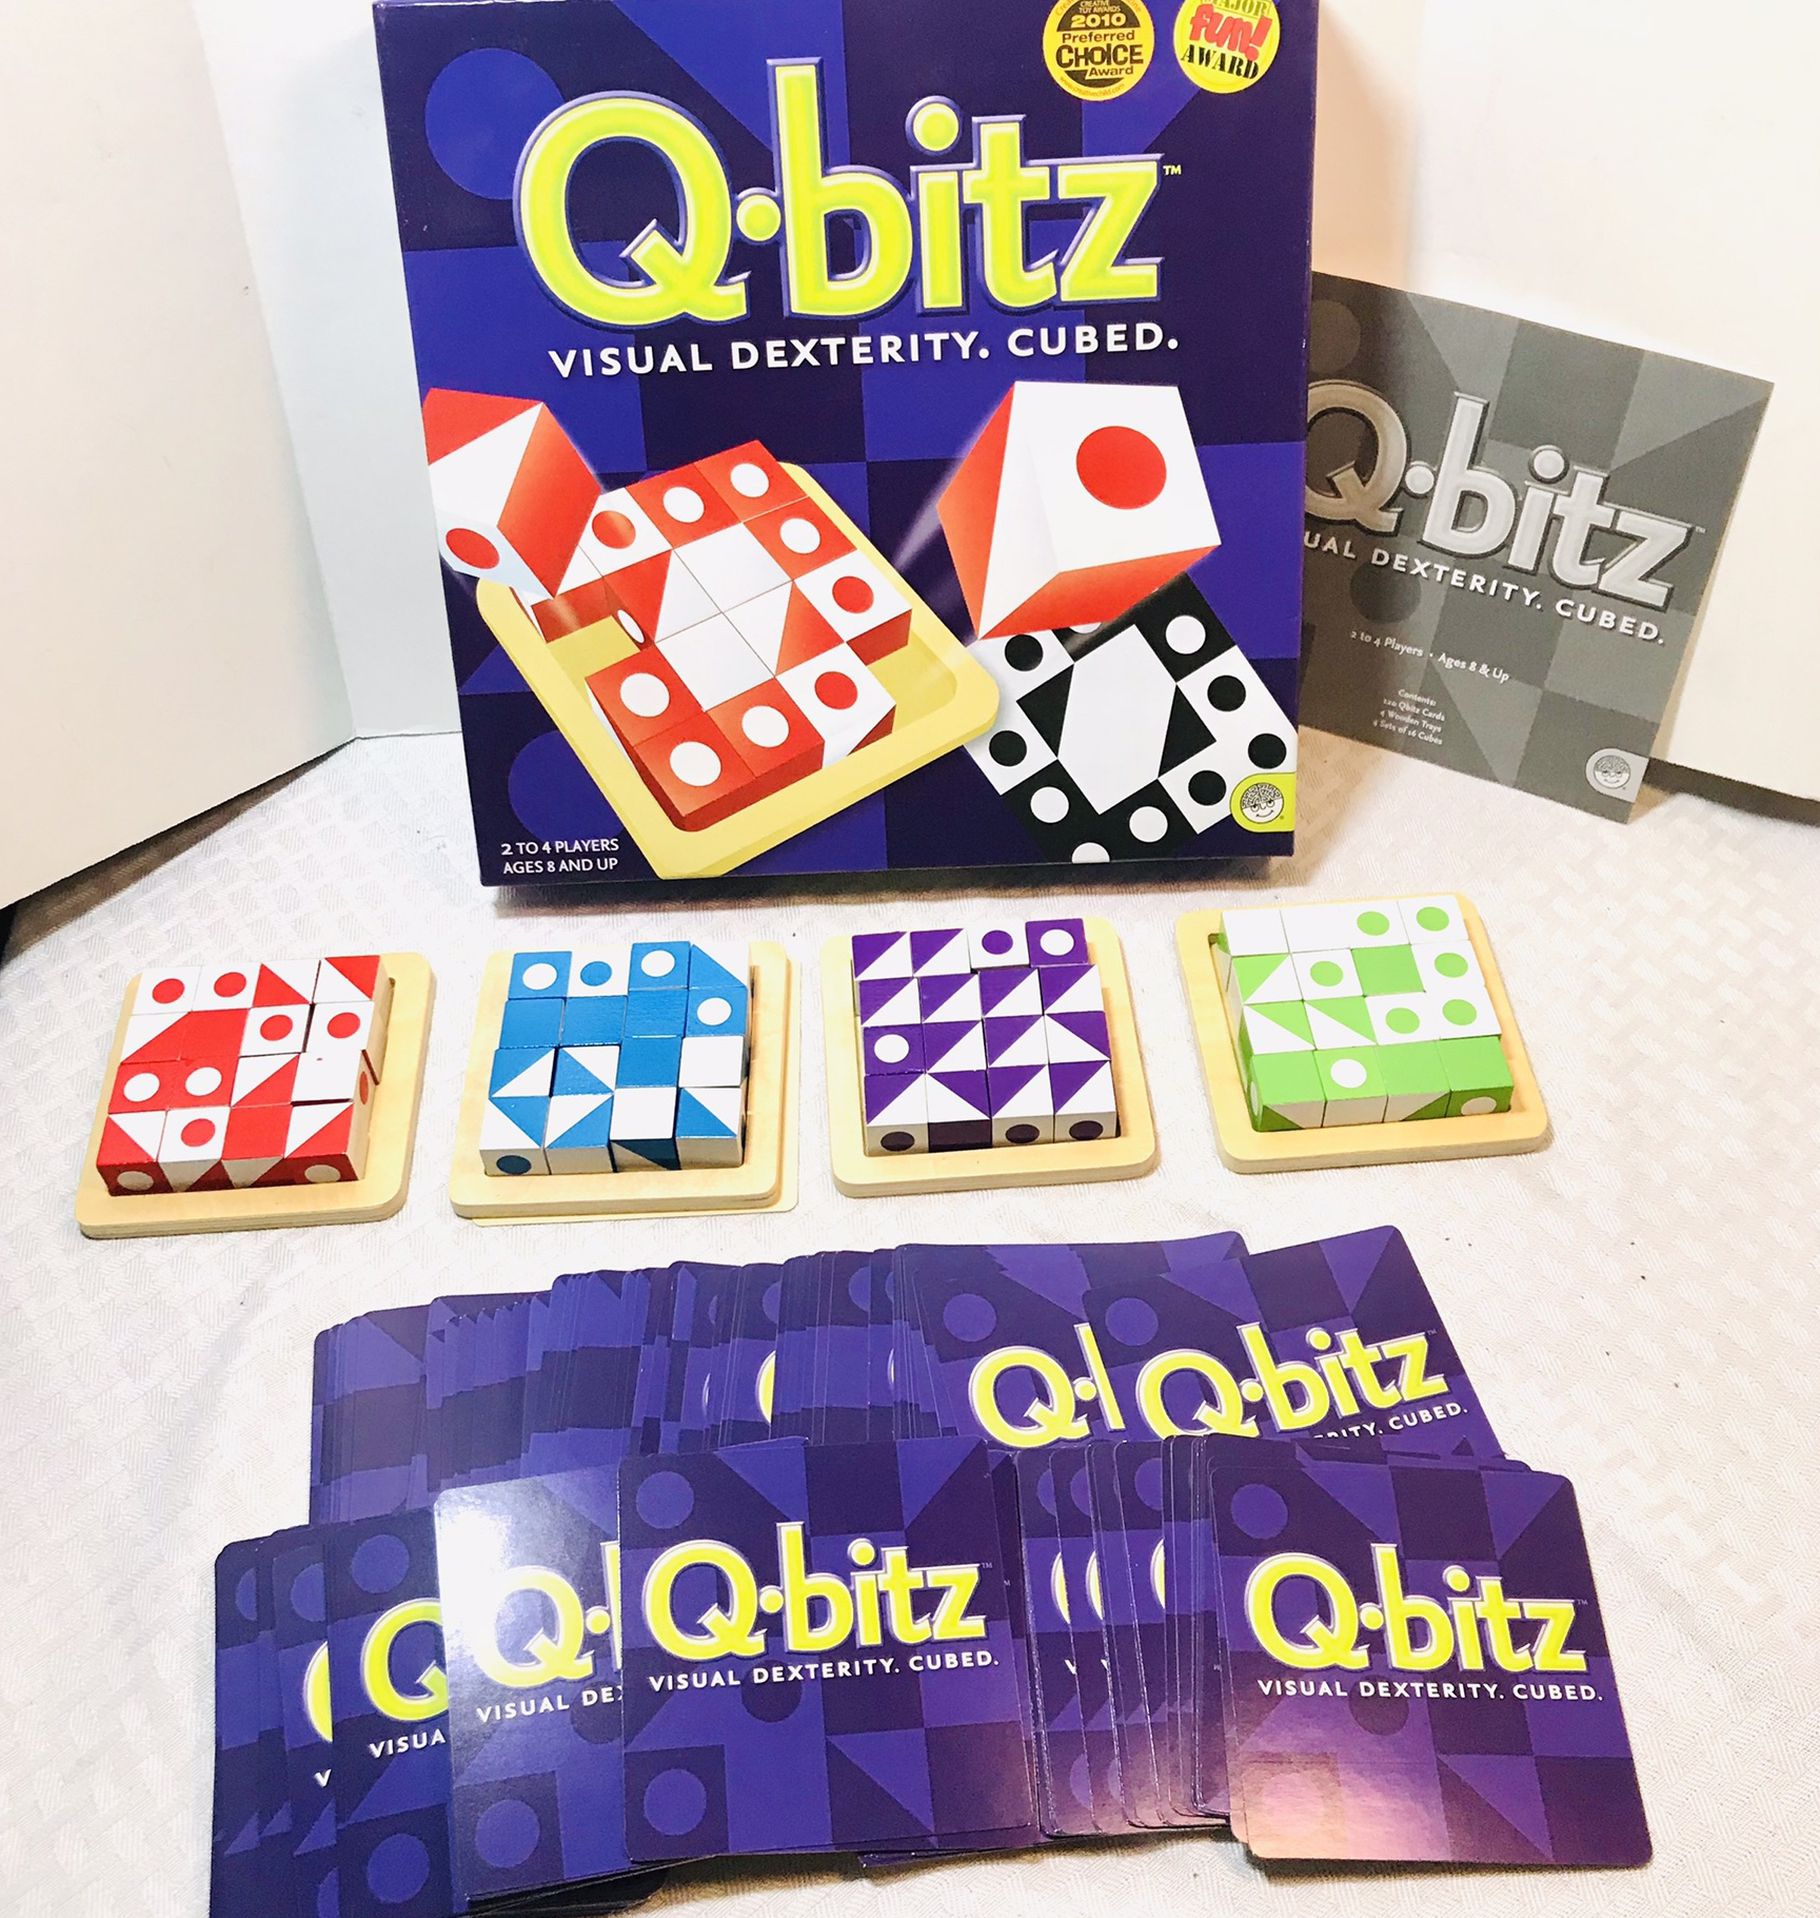 2009 Q-Bitz Visual Dexterity Cubed Game